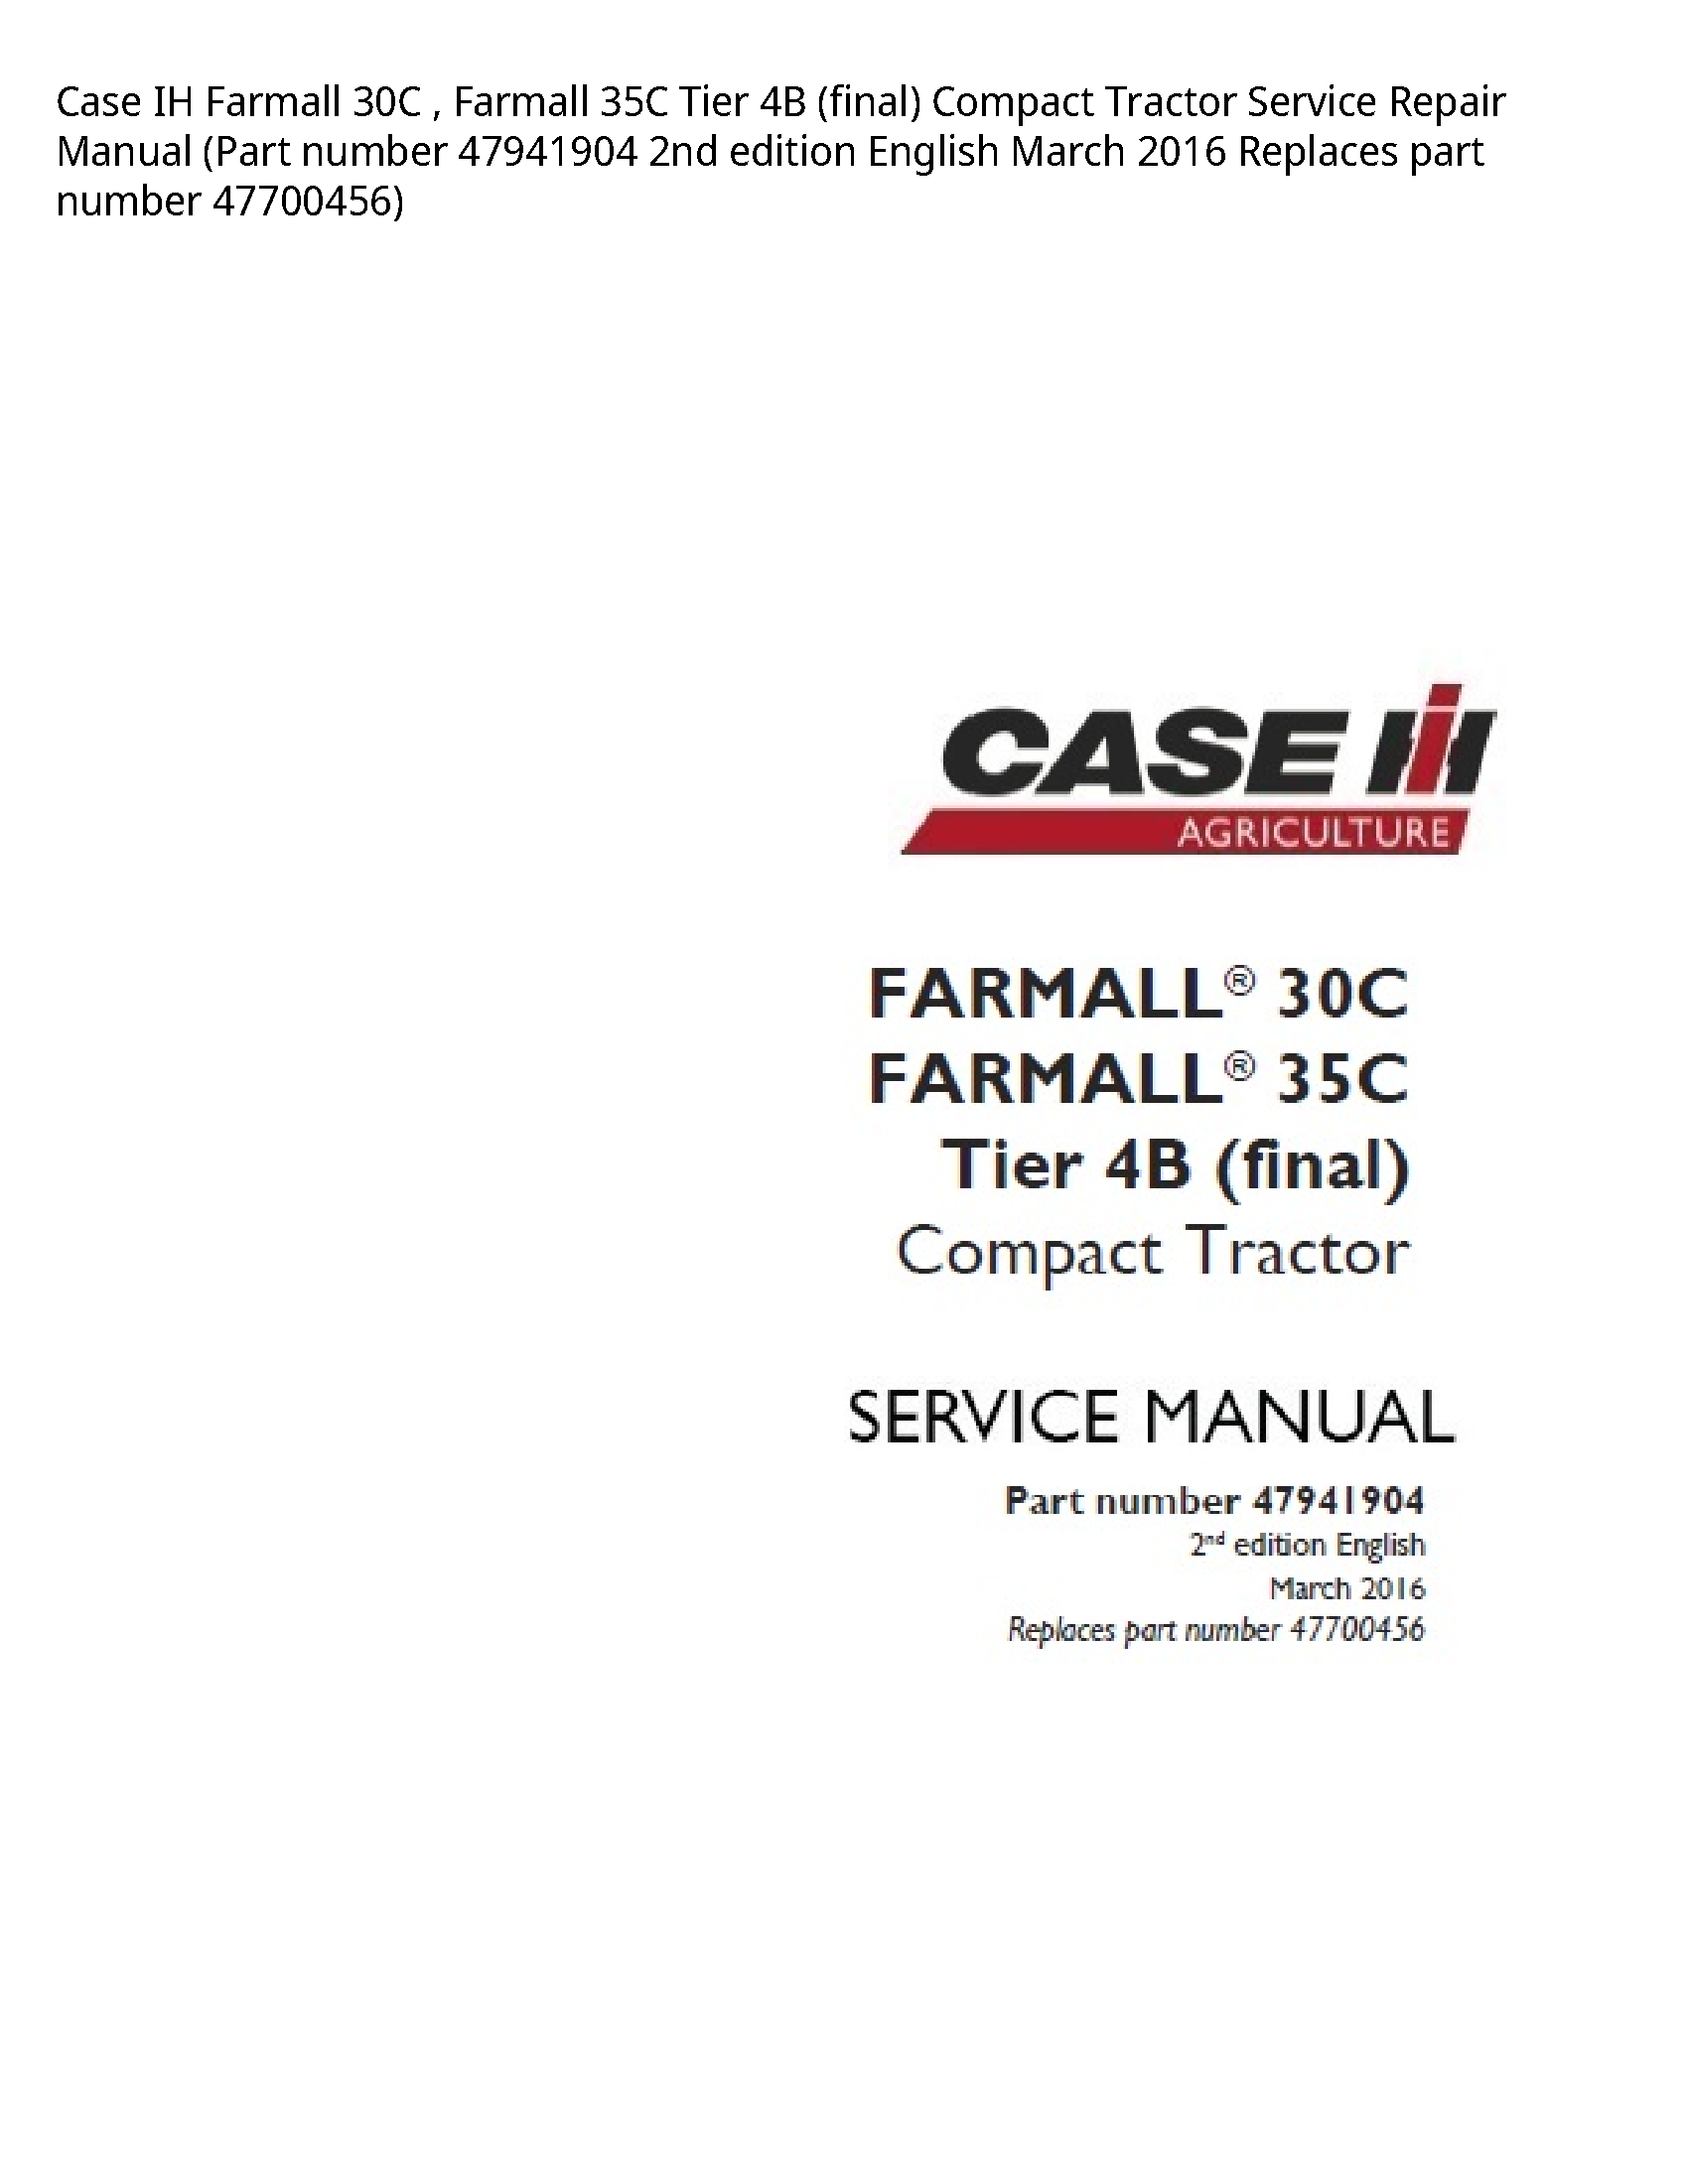 Case/Case IH 30C IH Farmall Farmall Tier (final) Compact Tractor manual